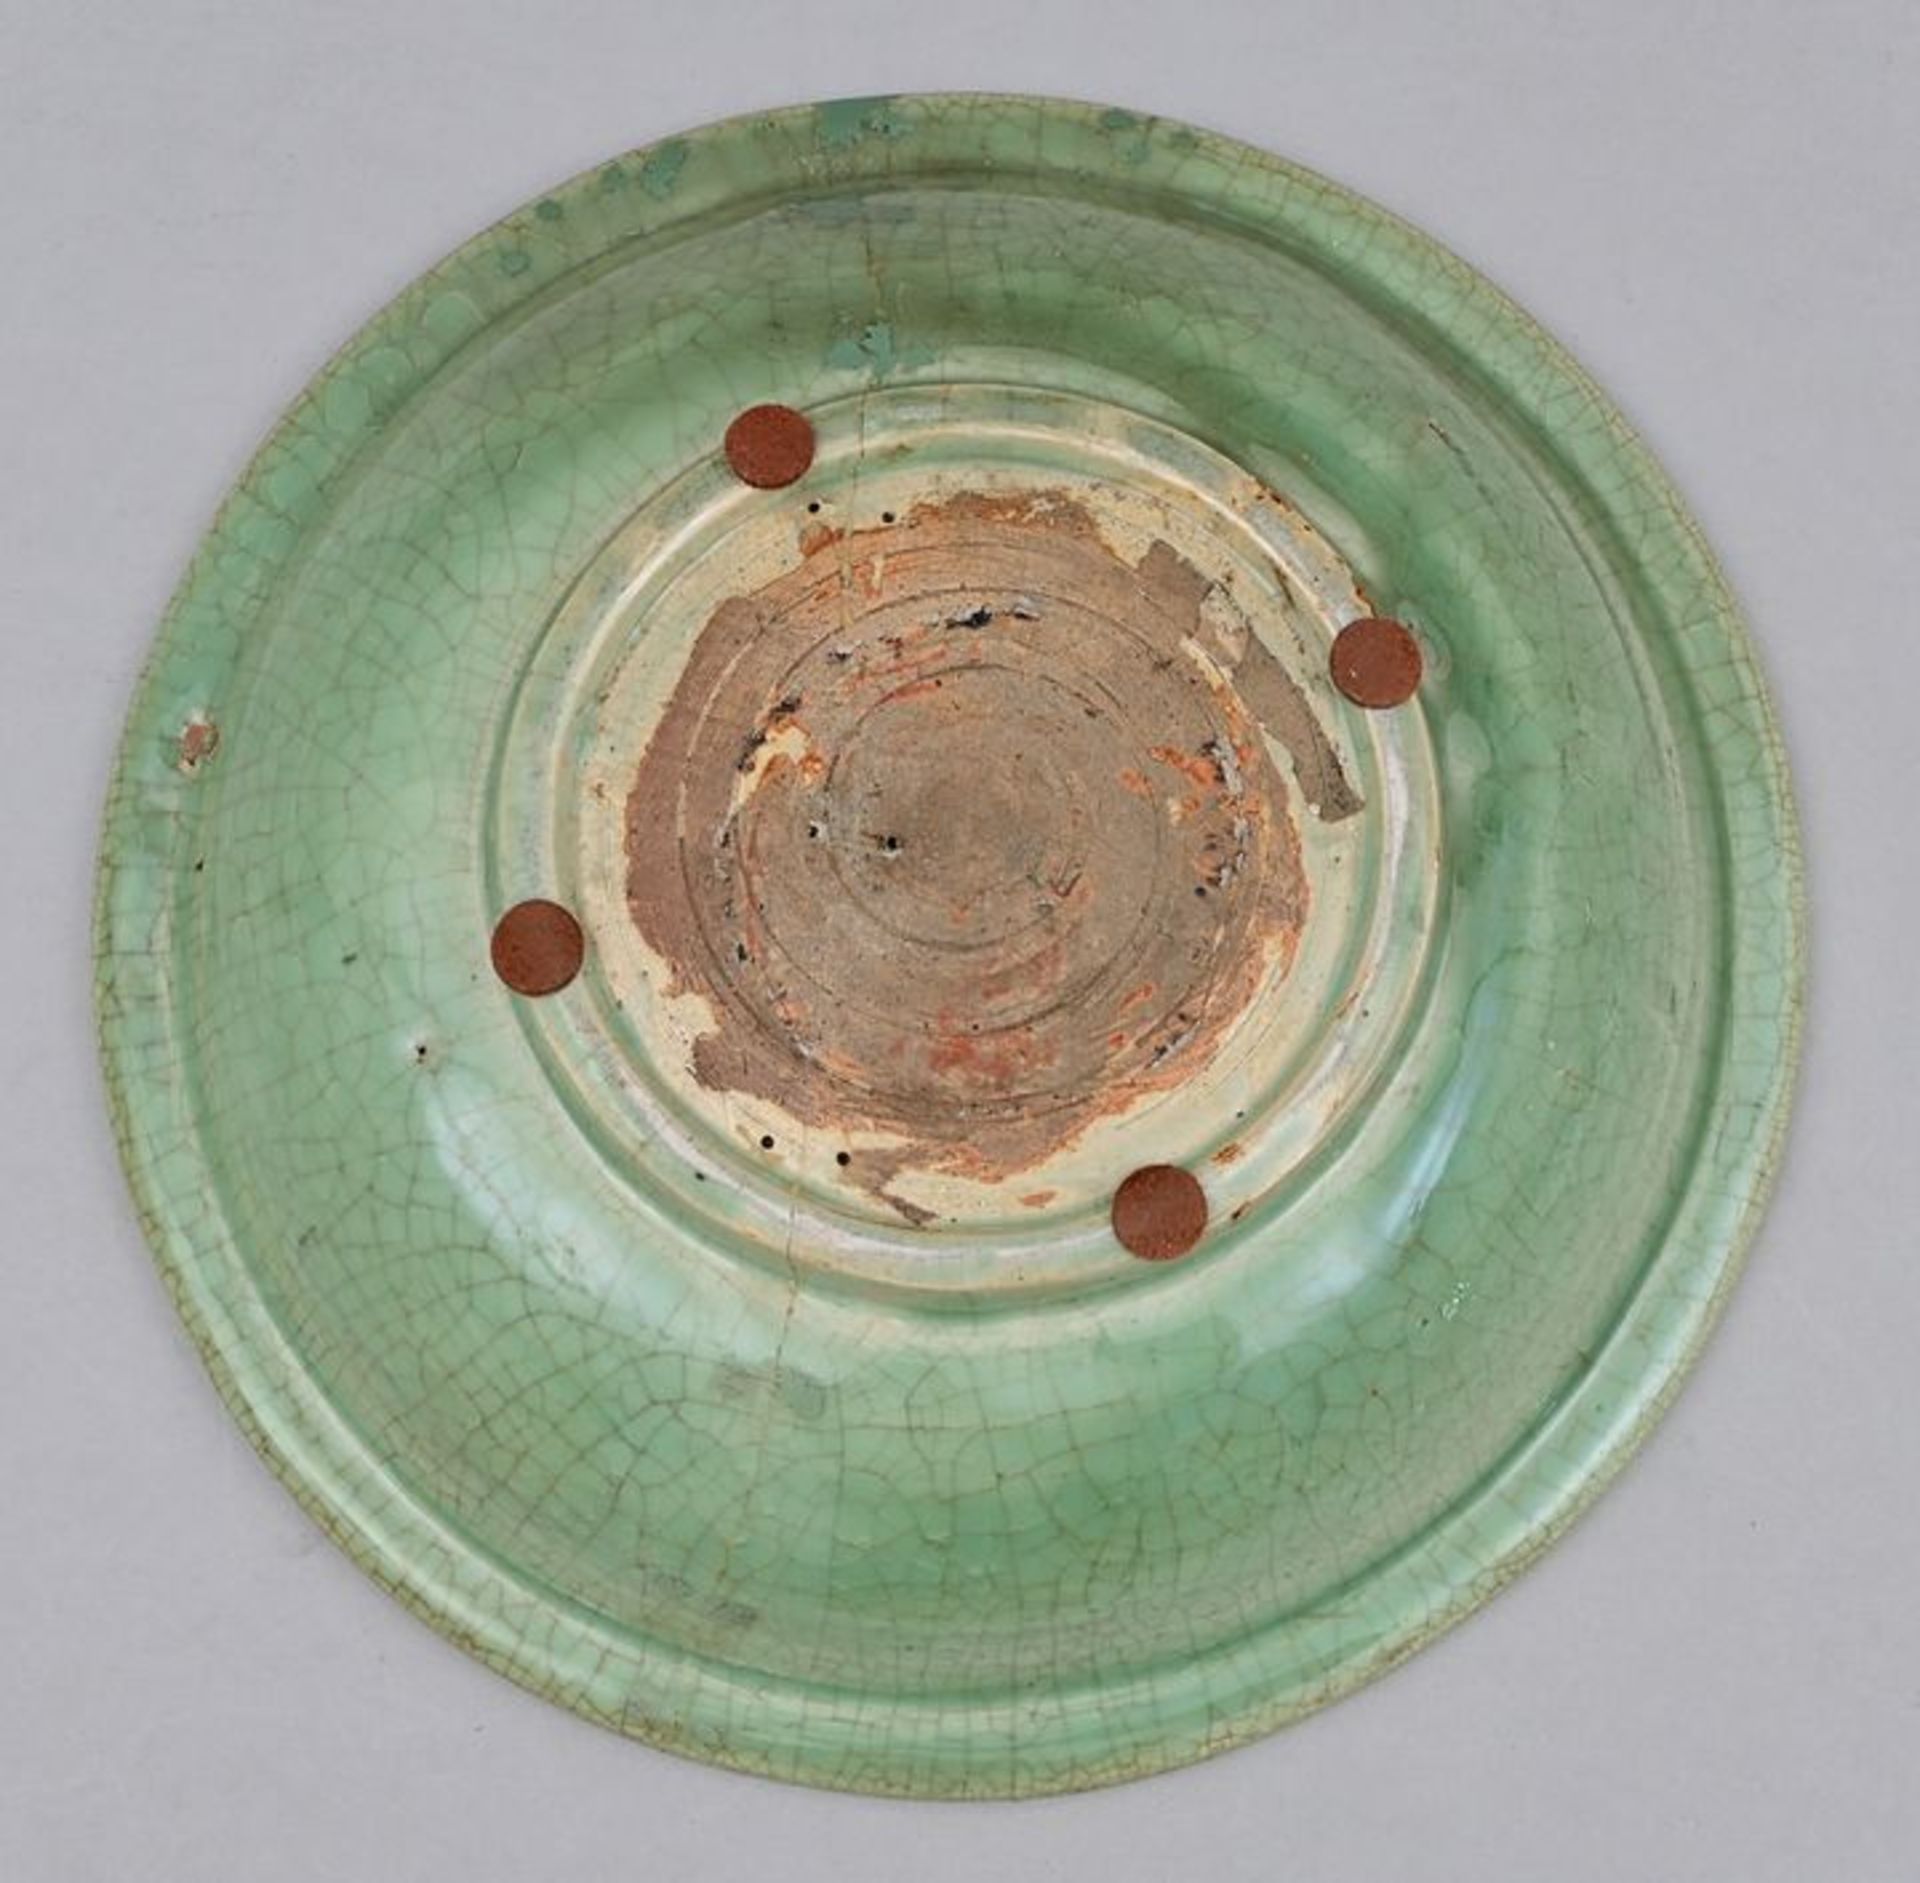 Platte grüne Glasur/ greenware plate - Image 4 of 4